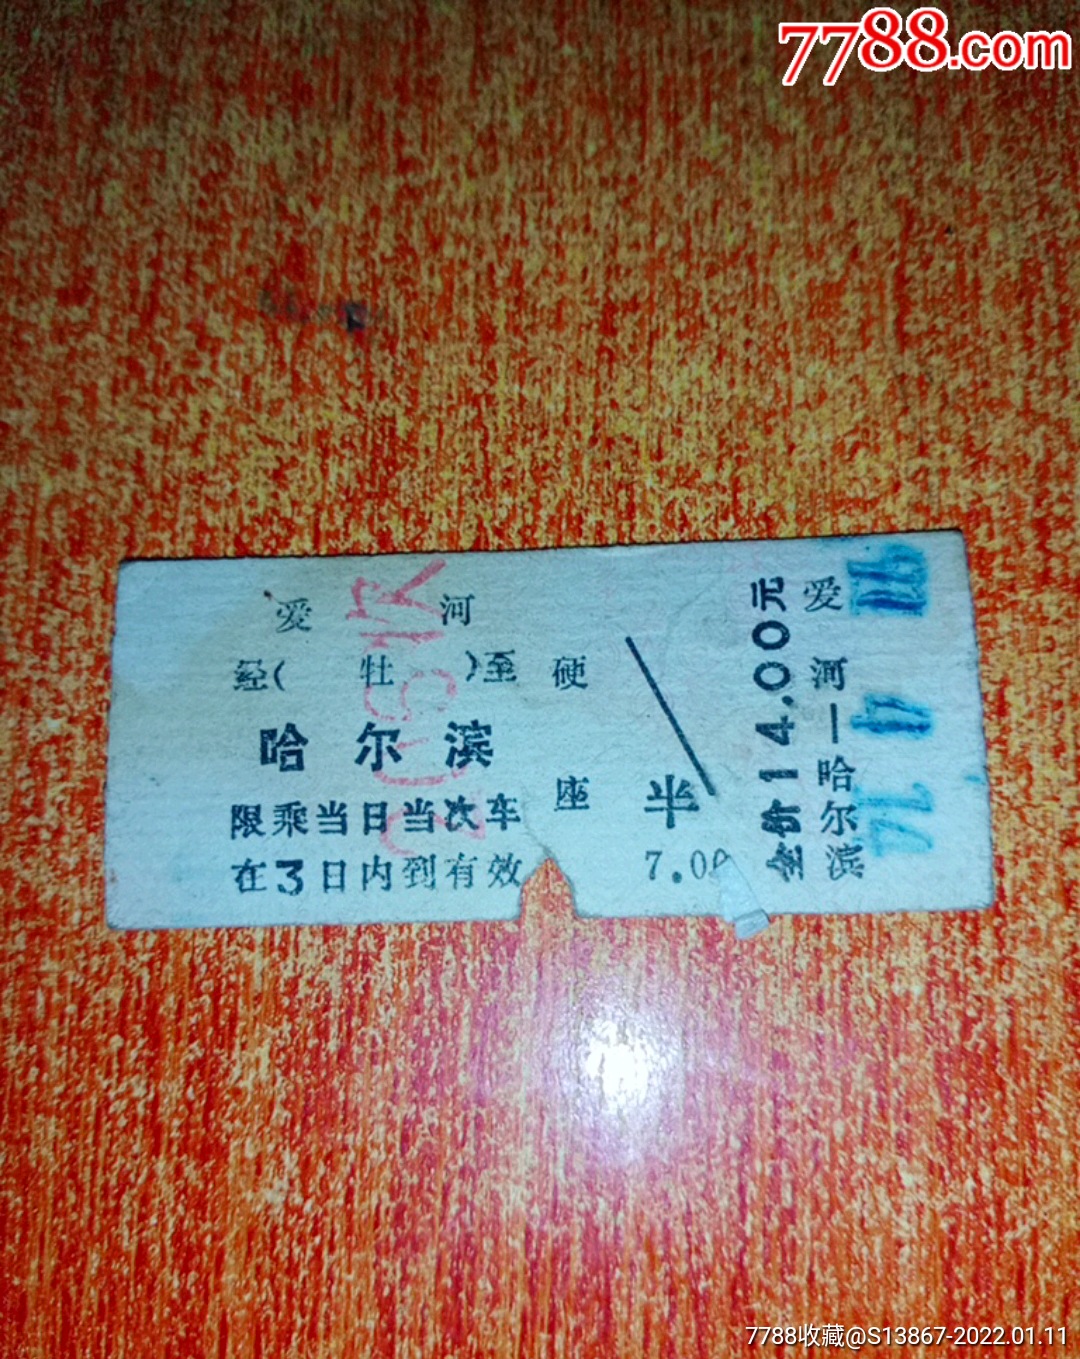 哈尔滨-牡丹江往返硬板火车票-价格:6元-se85631135-火车票-零售-7788收藏__收藏热线